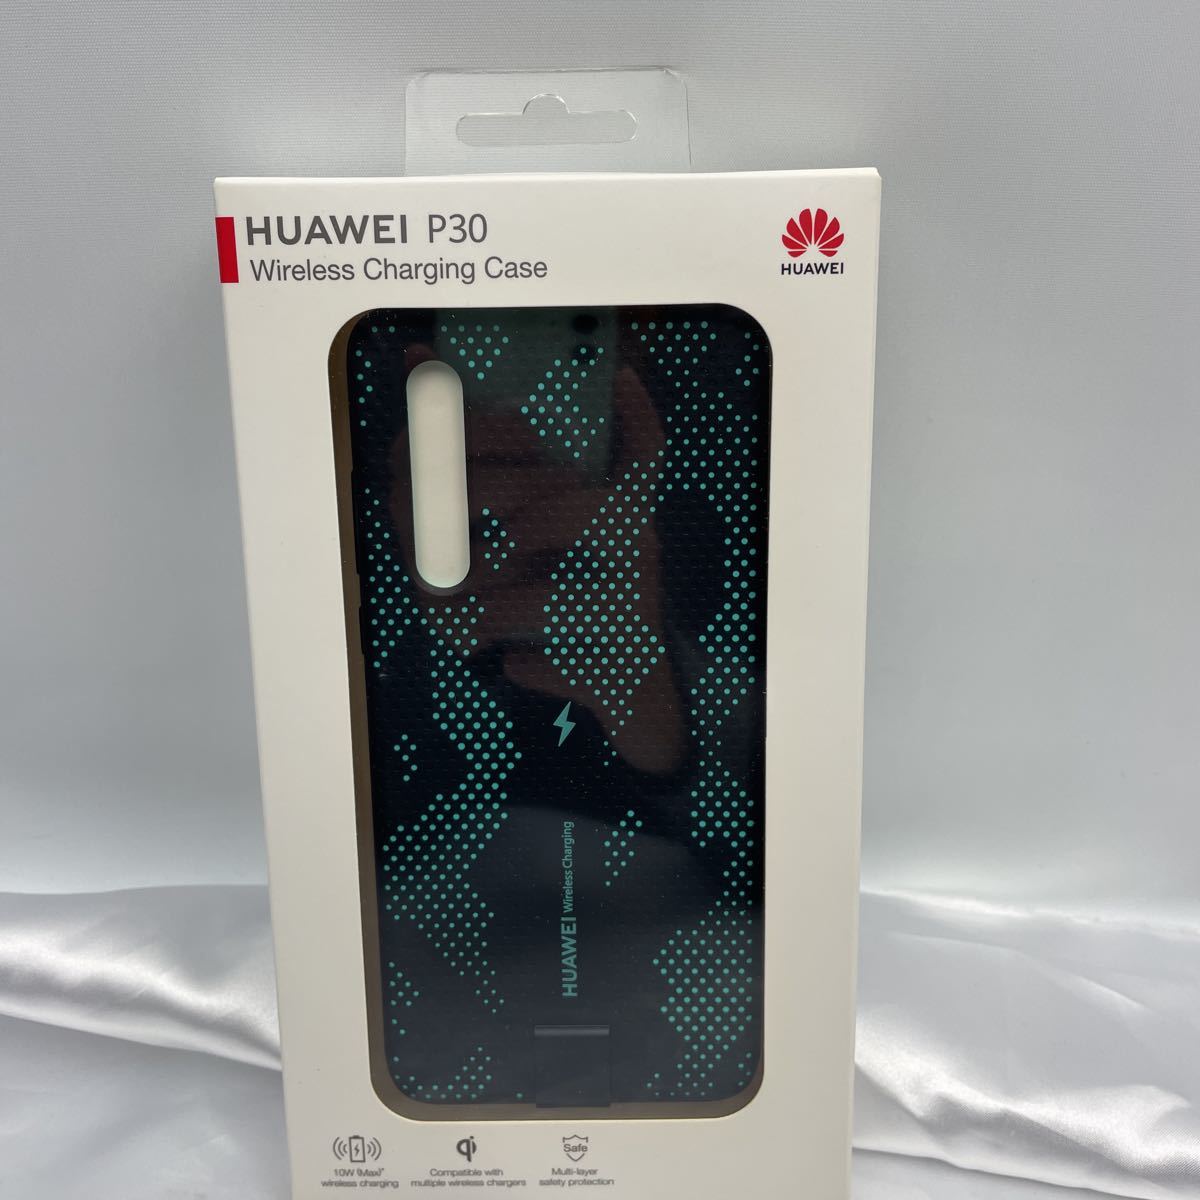 未開封新品Huawei P30 オーロラ 無線充電ケース付き